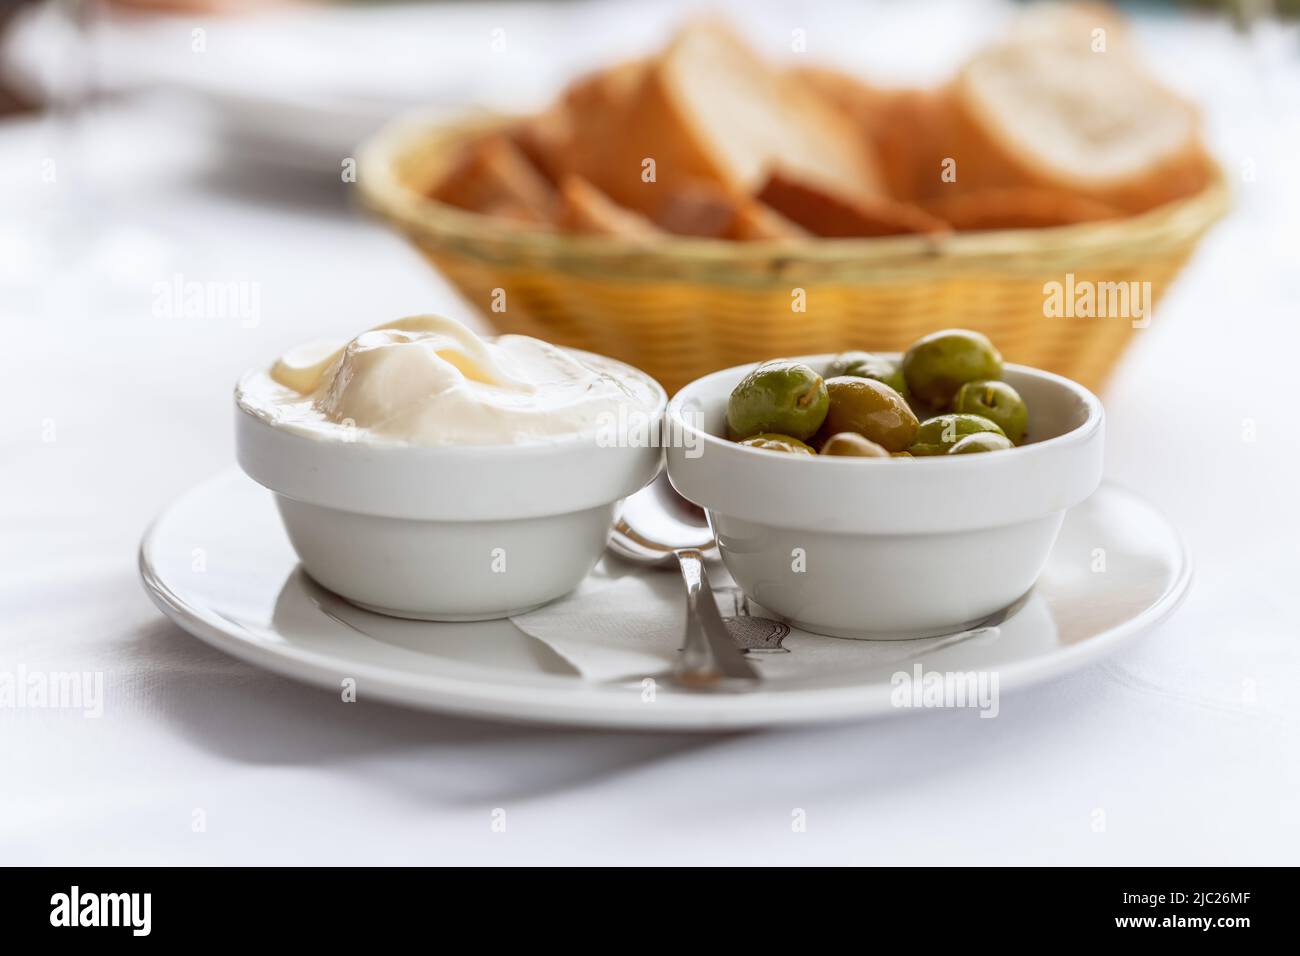 Klassische spanische Vorspeise Alioli (hausgemachte Knoblauch-Mayonnaise) mit grünen Oliven und hausgemachtem Brot Stockfoto